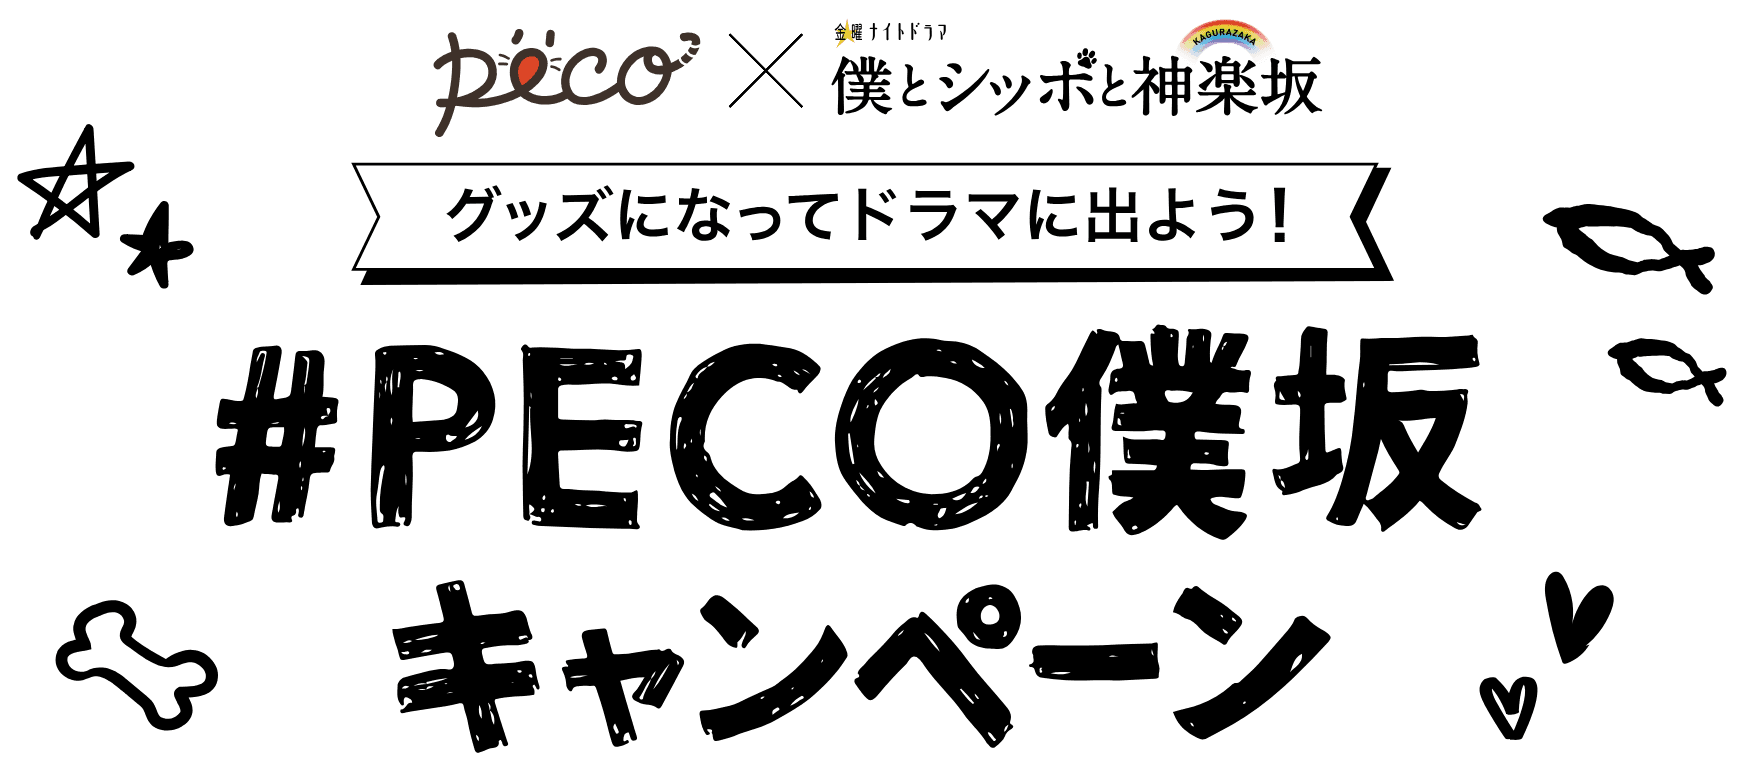 PECO × 金曜ナイトドラマ「僕とシッポと神楽坂」グッズになってドラマにでよう！#PECO僕坂キャンペーン